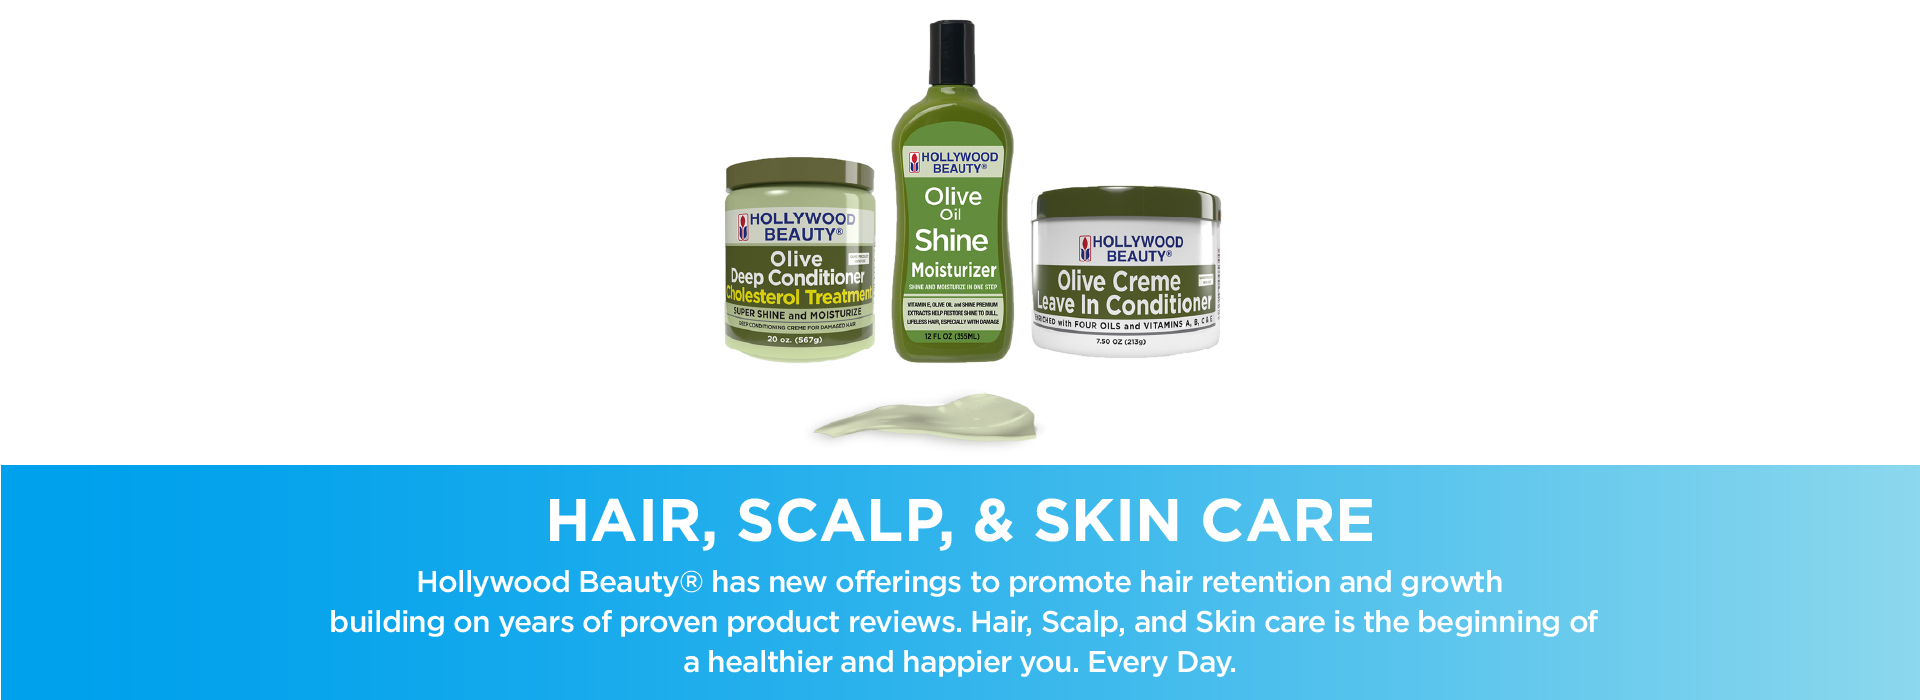 Hair, Scalp & Skin Care